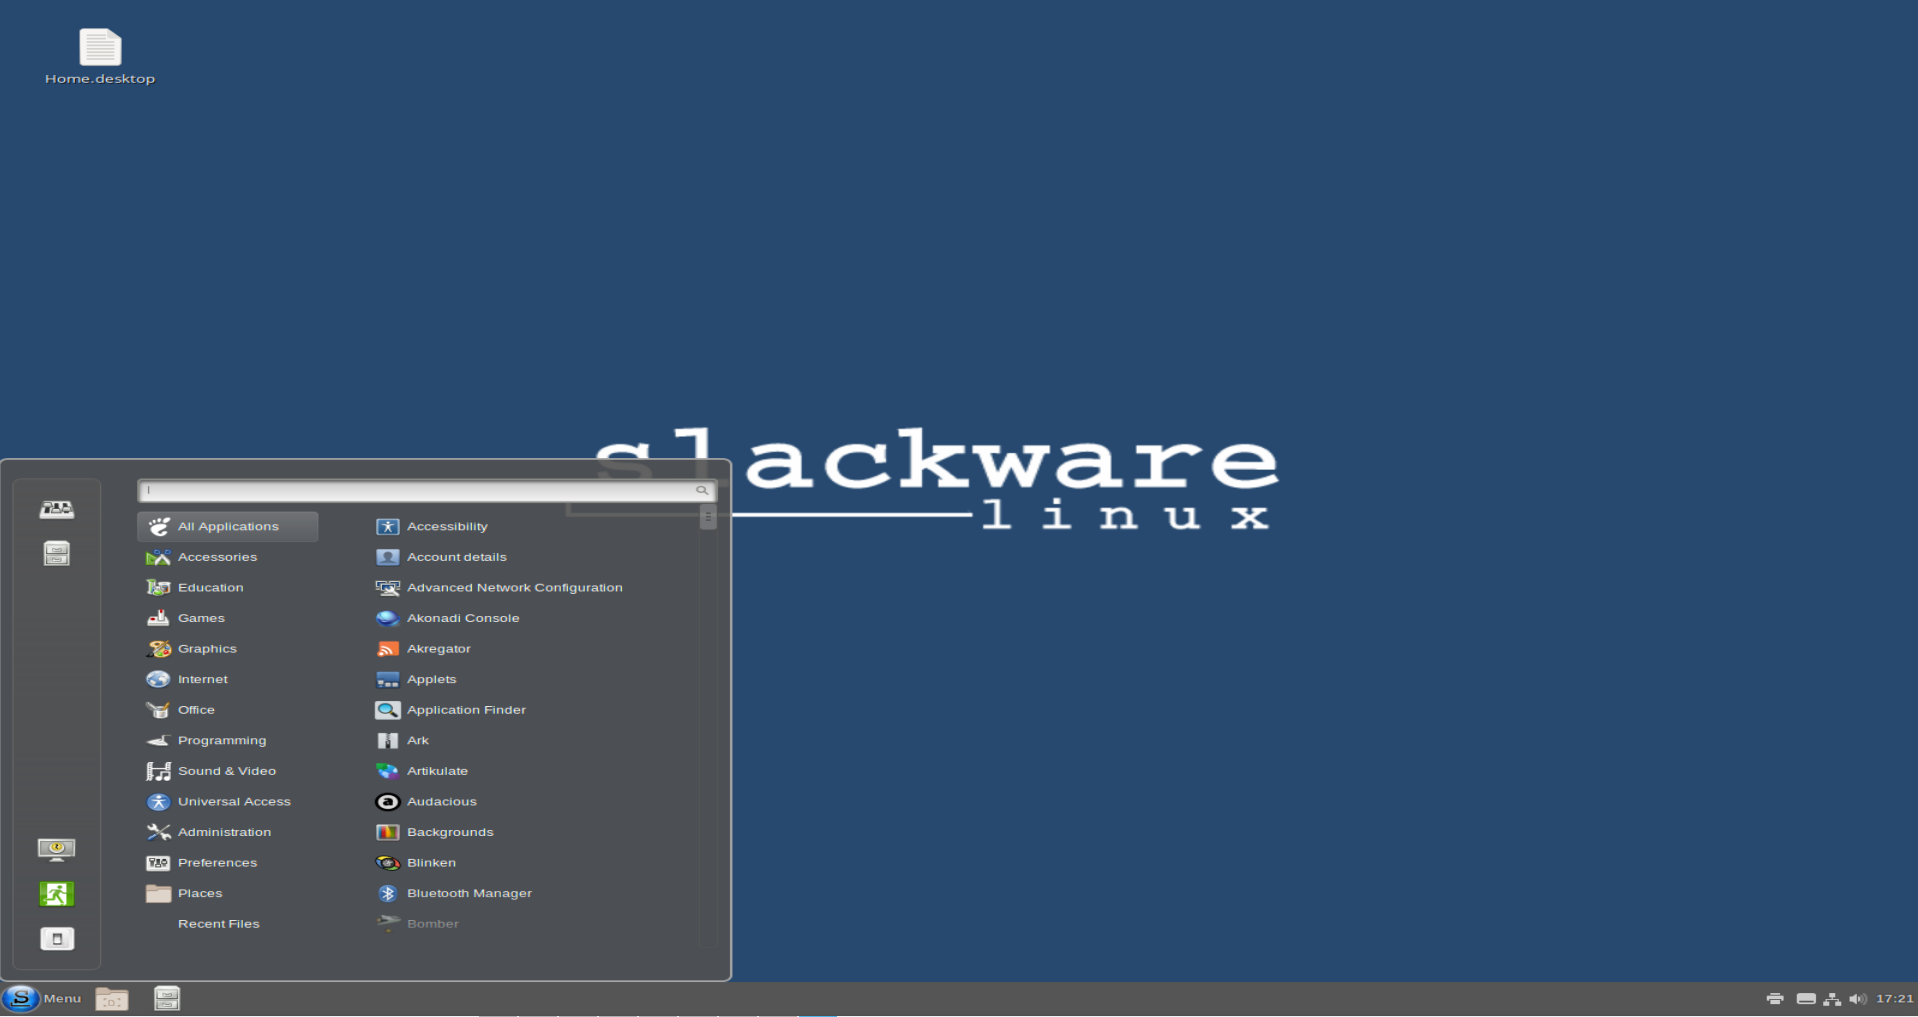 slackware 14.2